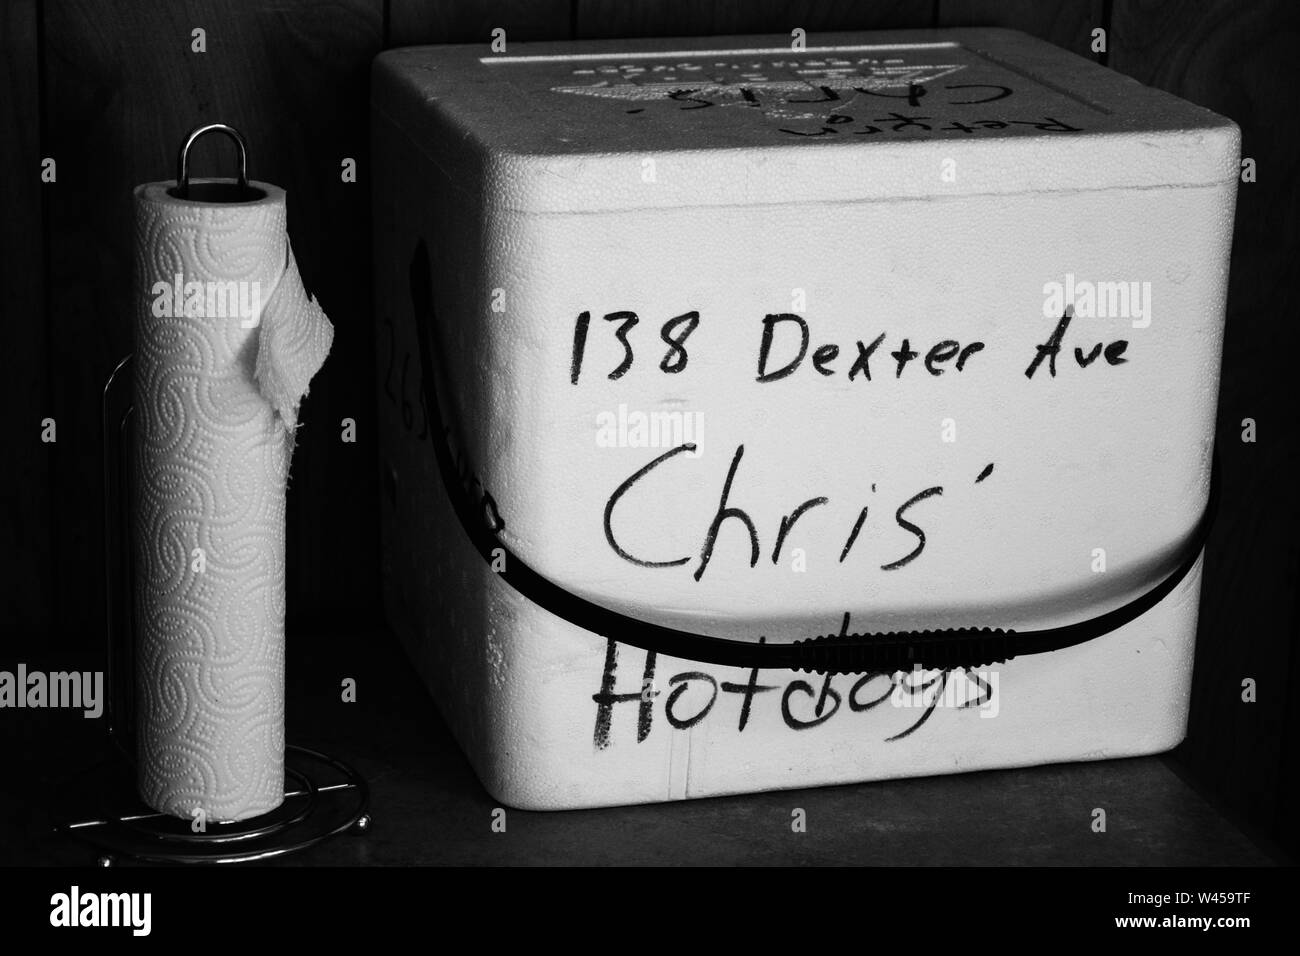 Un refrigeratore in polistirolo espanso per prelevare gli ordini nella zona pranzo di Chris' famoso Hot Dogs in Montgomery, AL, STATI UNITI D'AMERICA Foto Stock